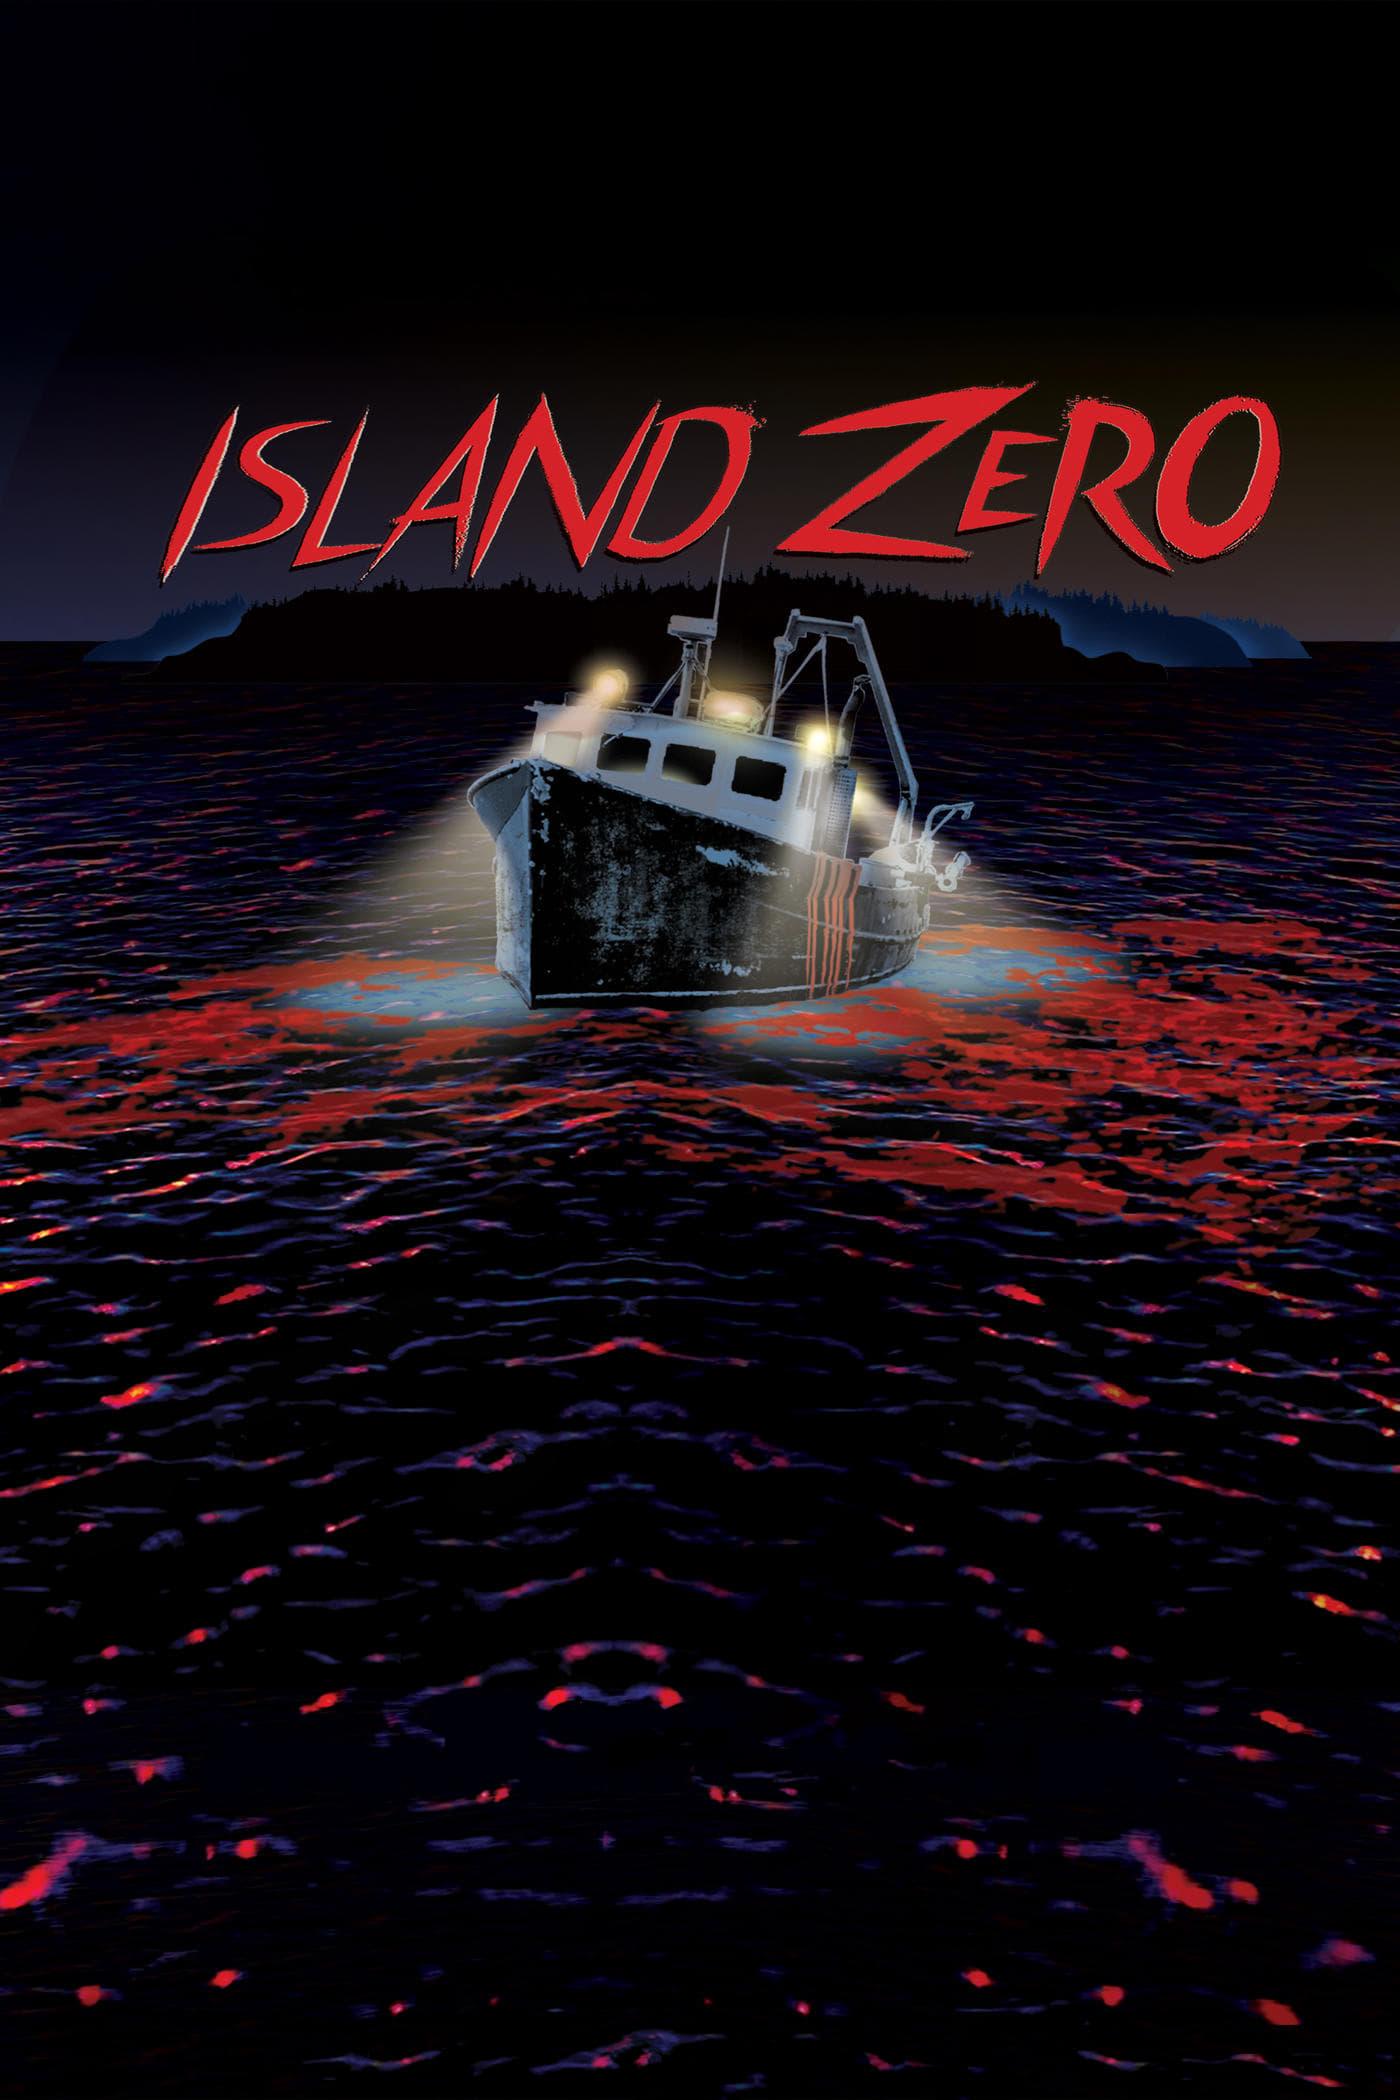 Island Zero poster